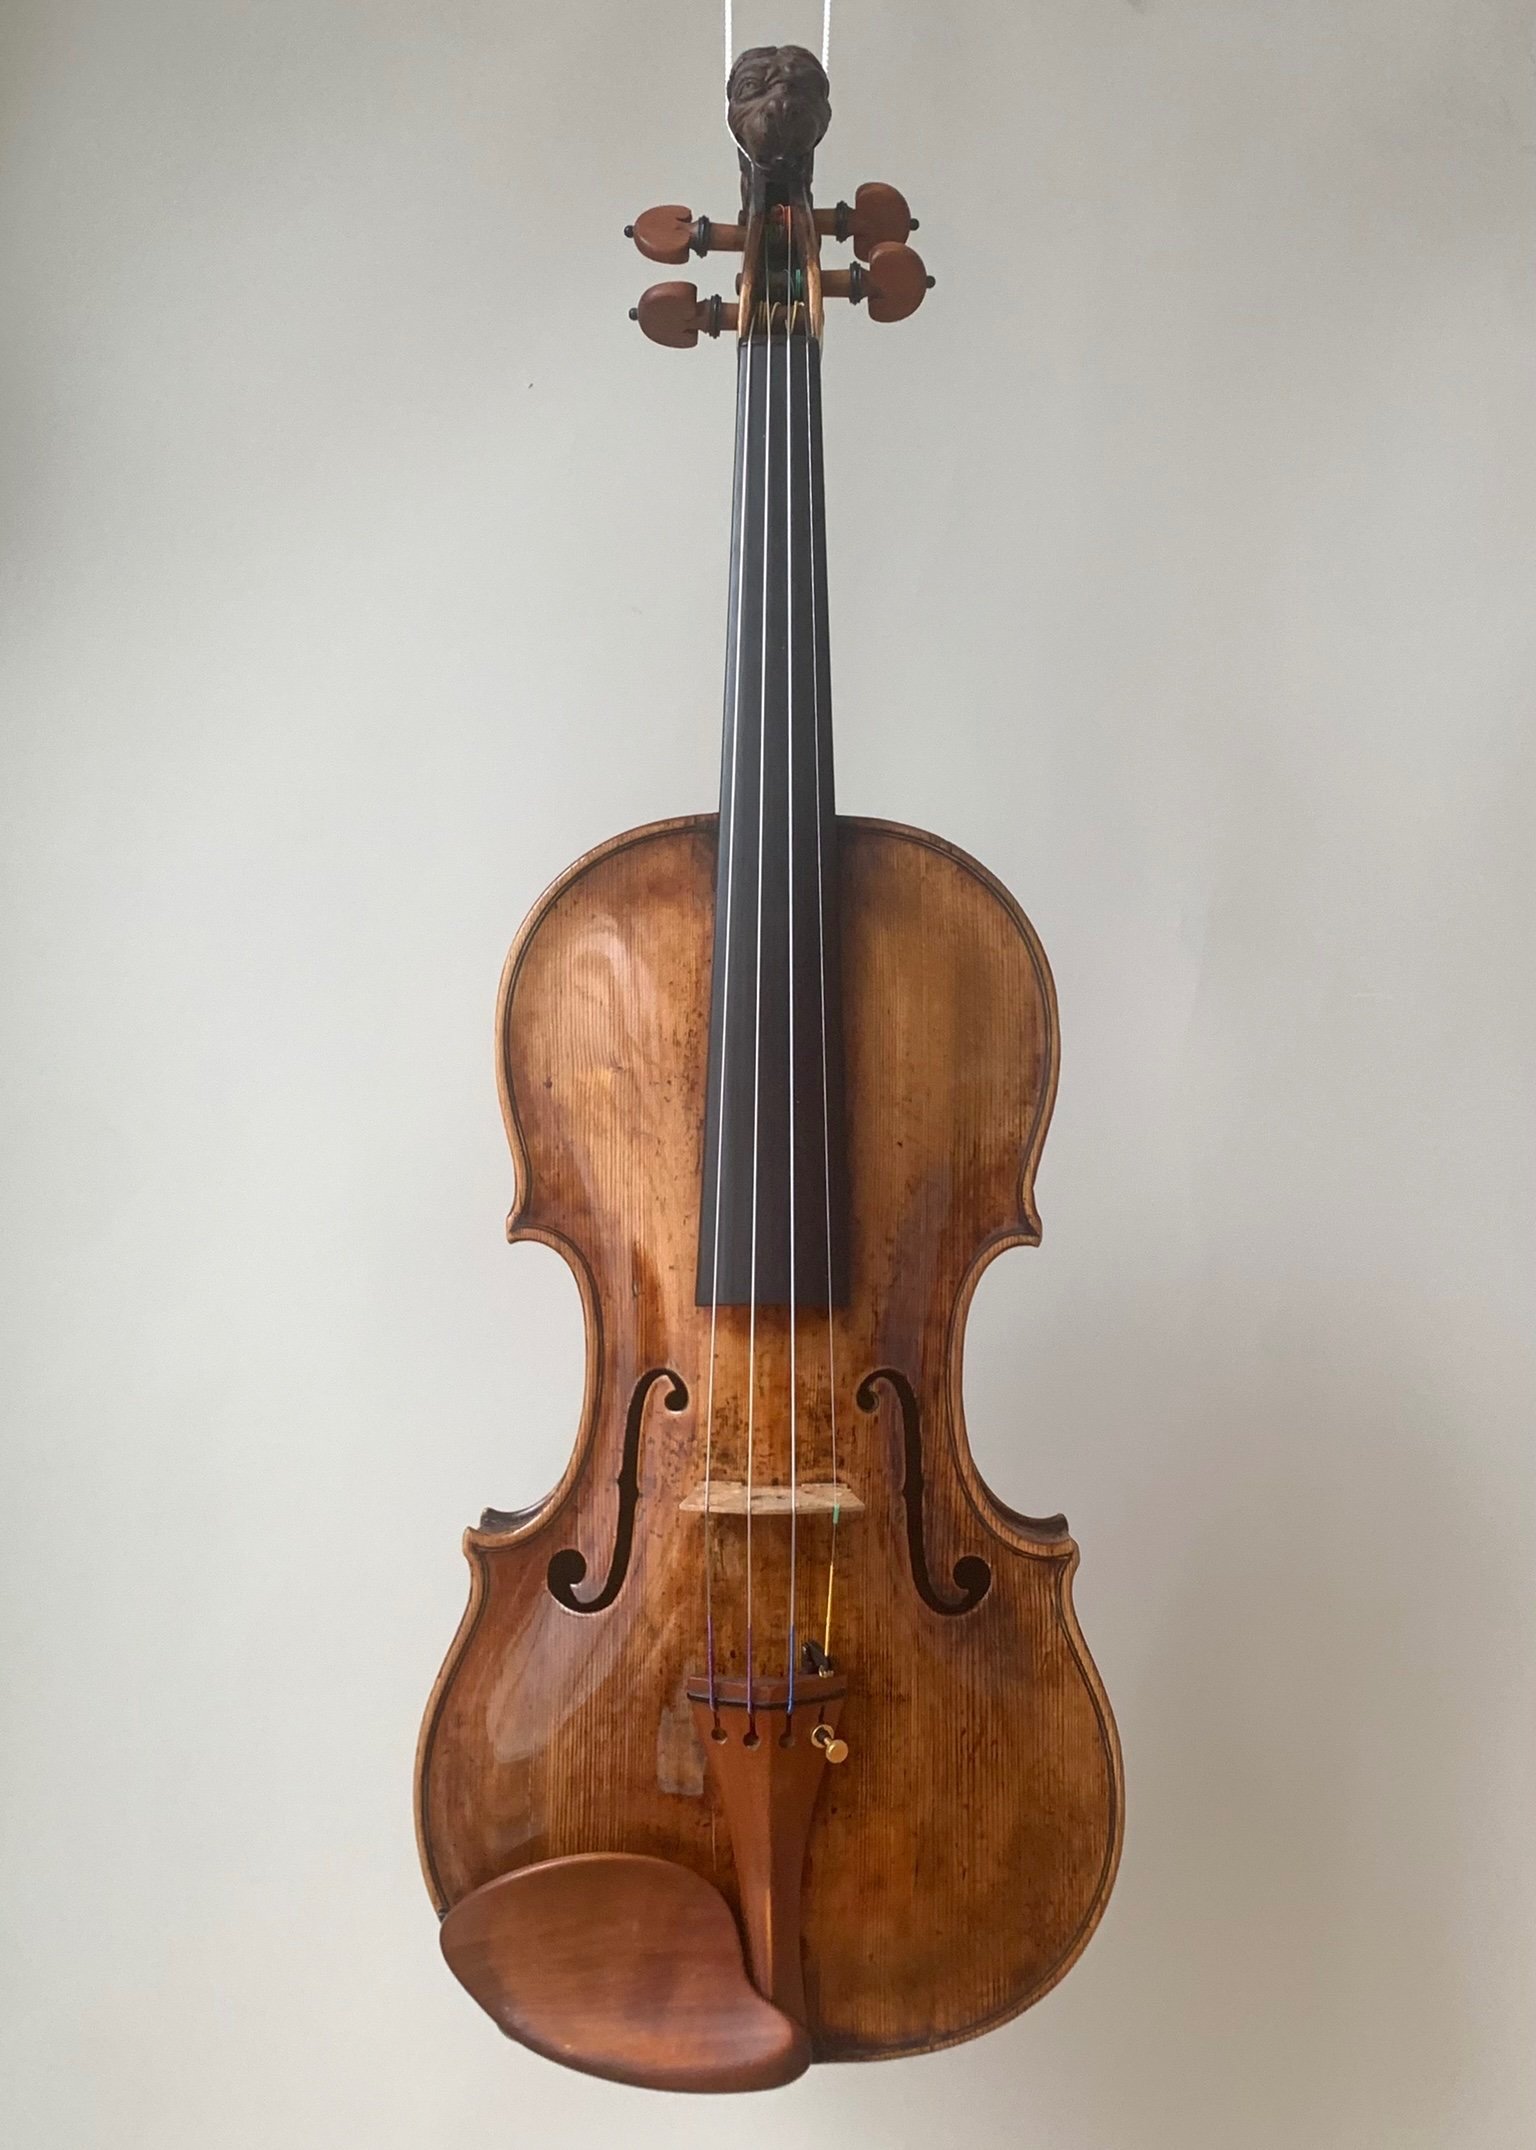 Violine, Johann Schorn, Salzburg 1695